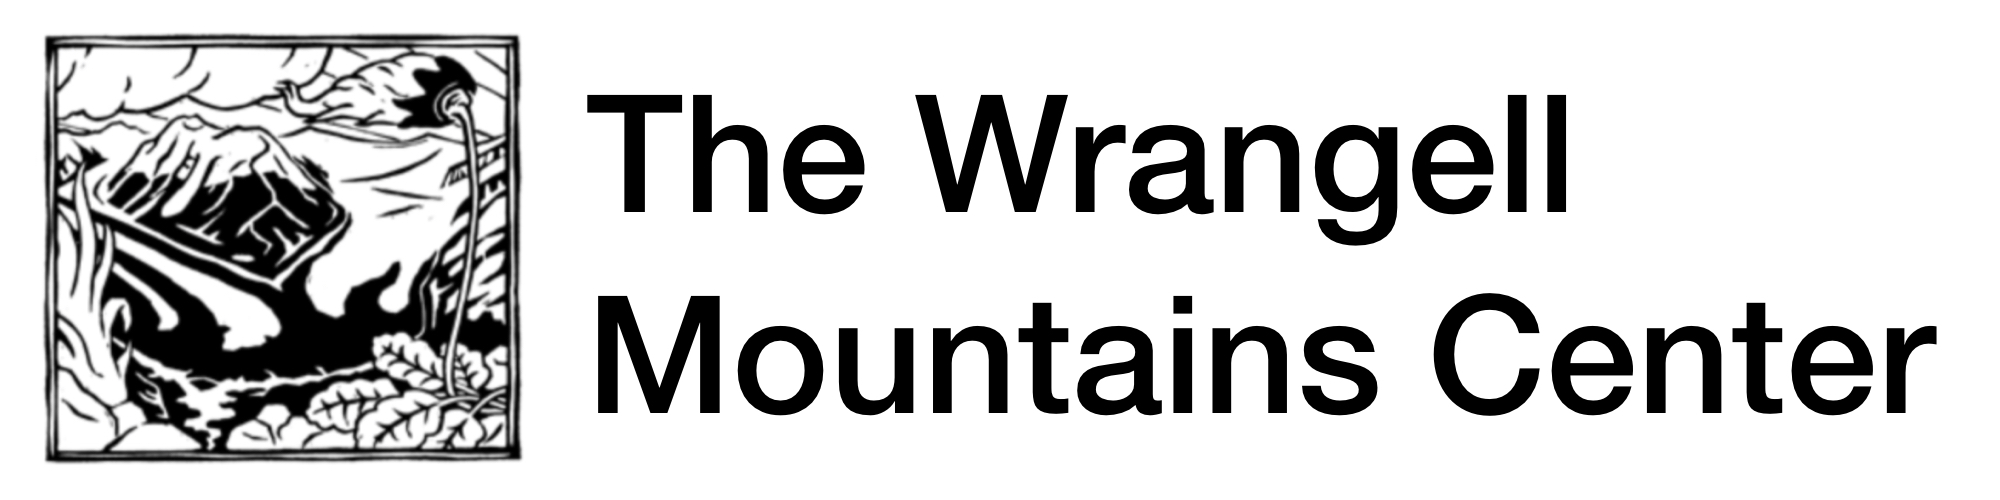 Wrangell Mountains Center logo